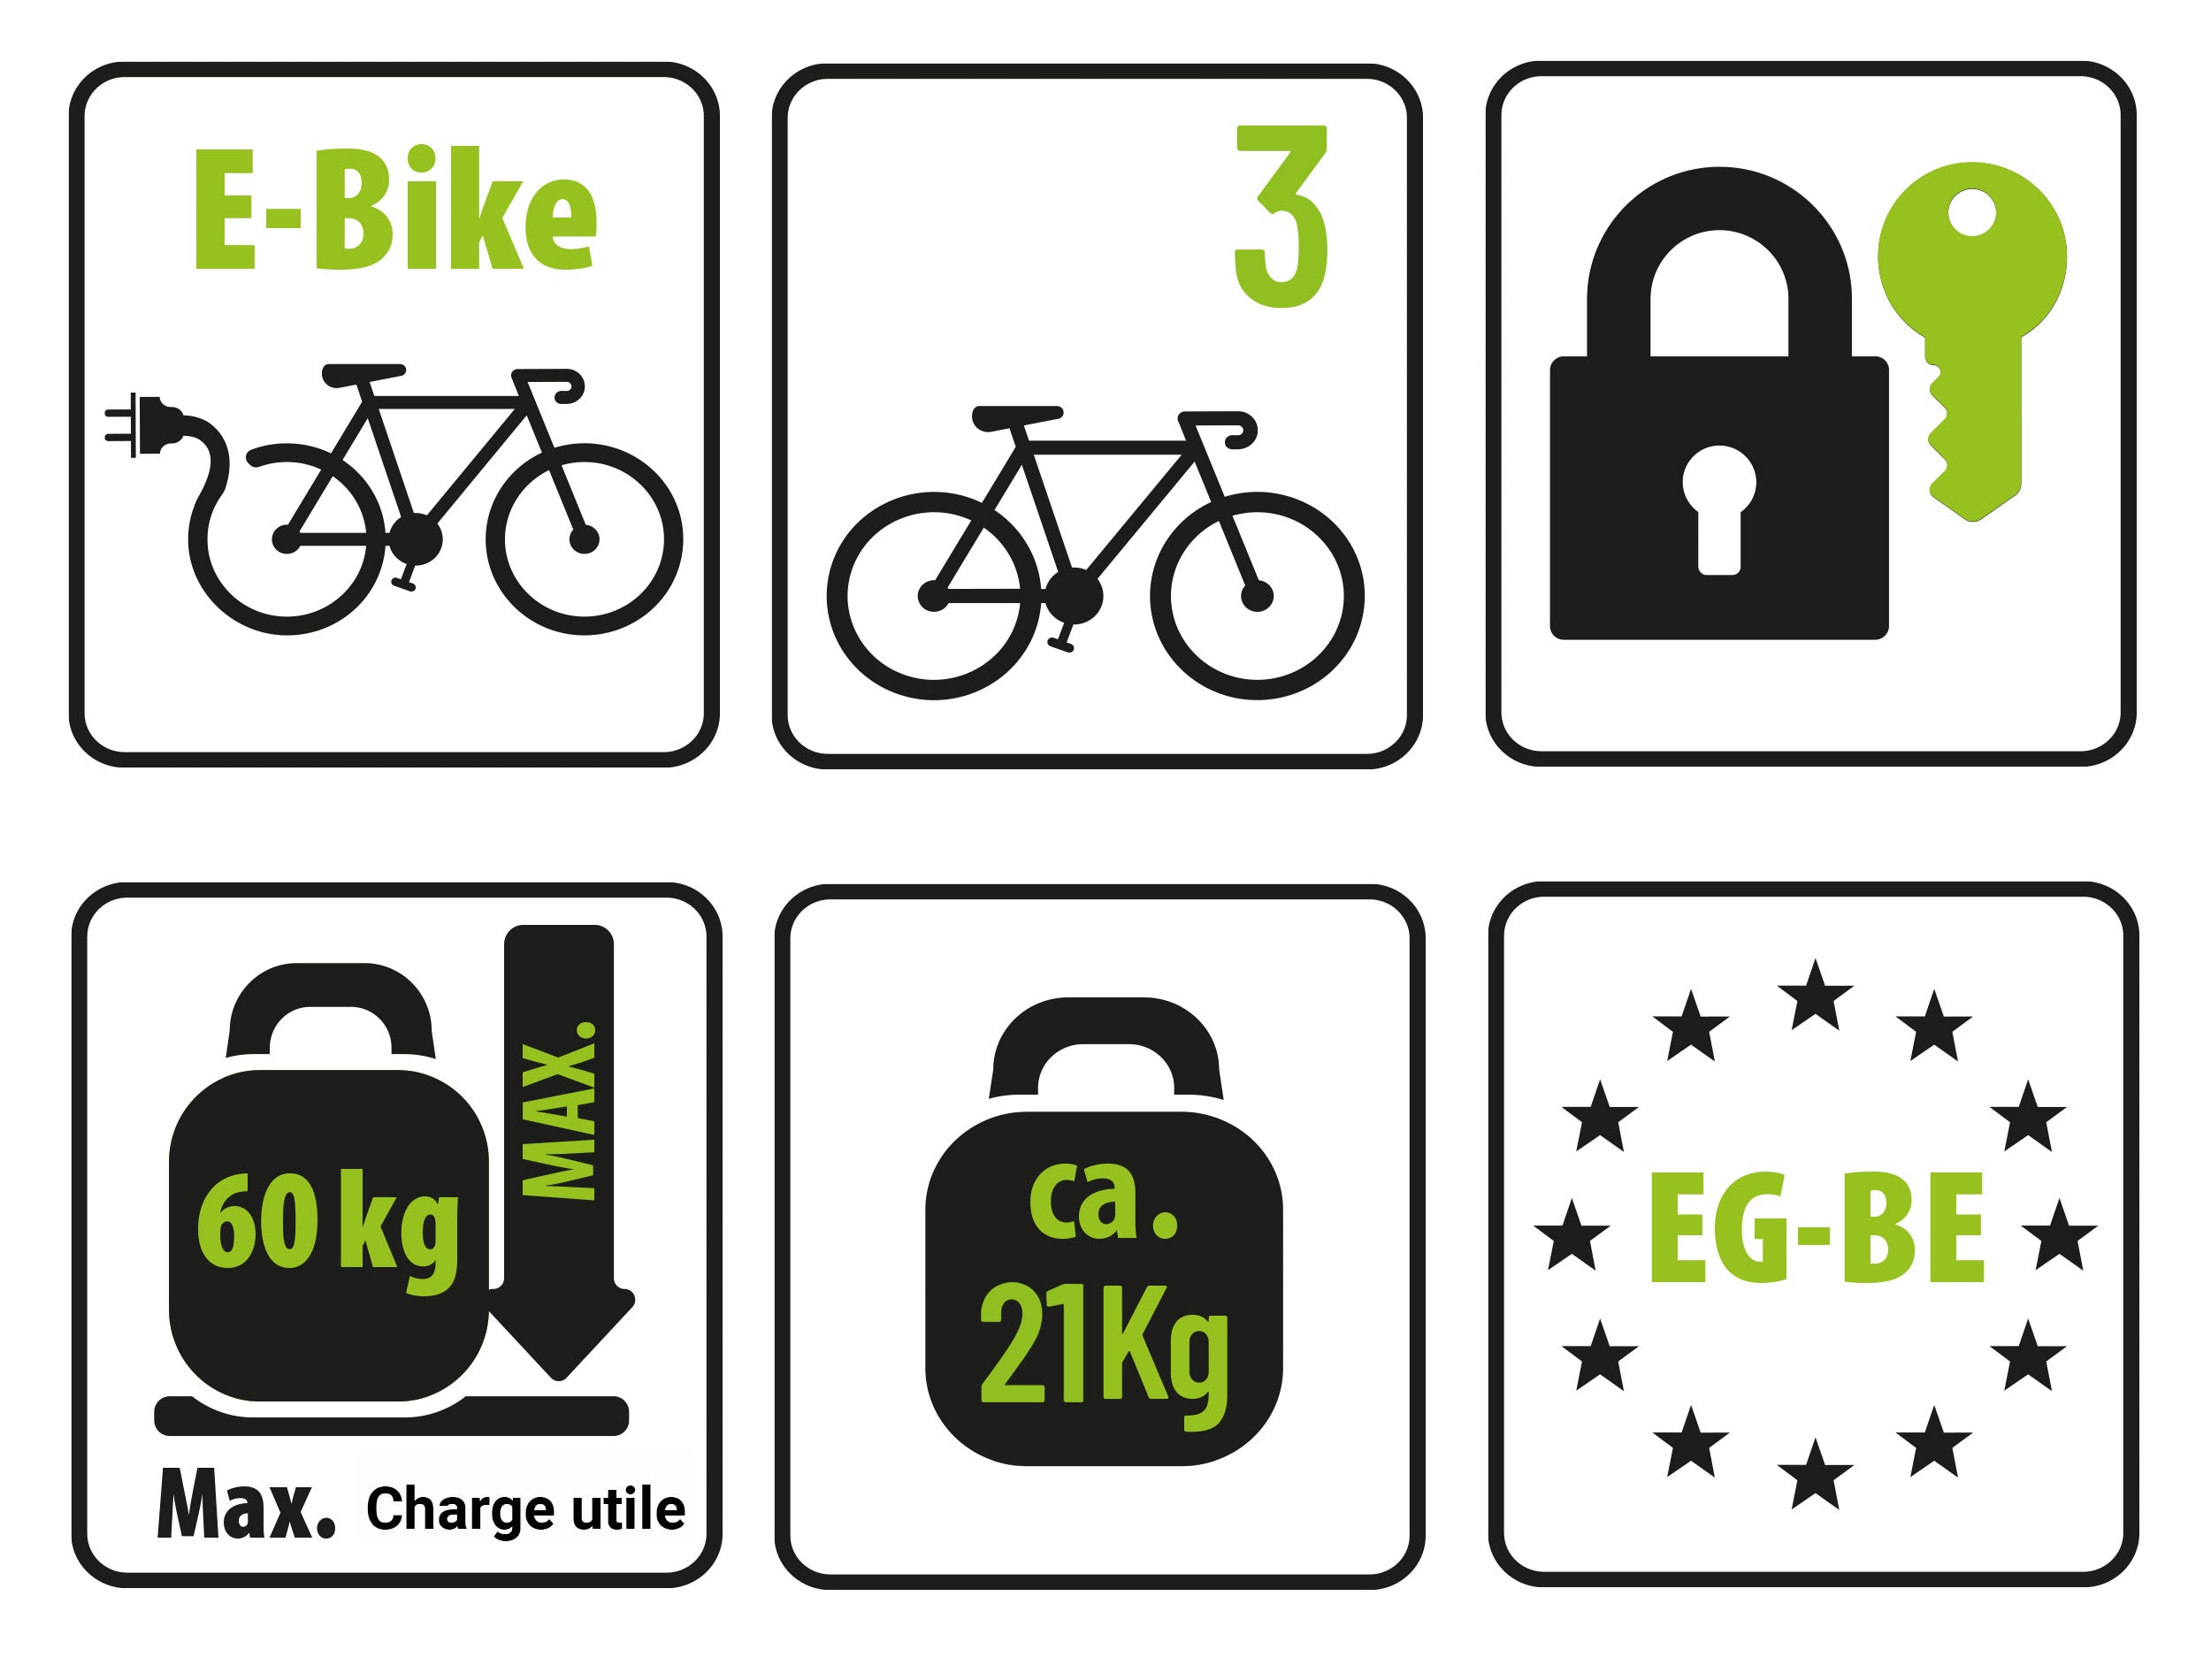 Porte-vélos 3 vélos plateforme FINCH 3 EUFAB